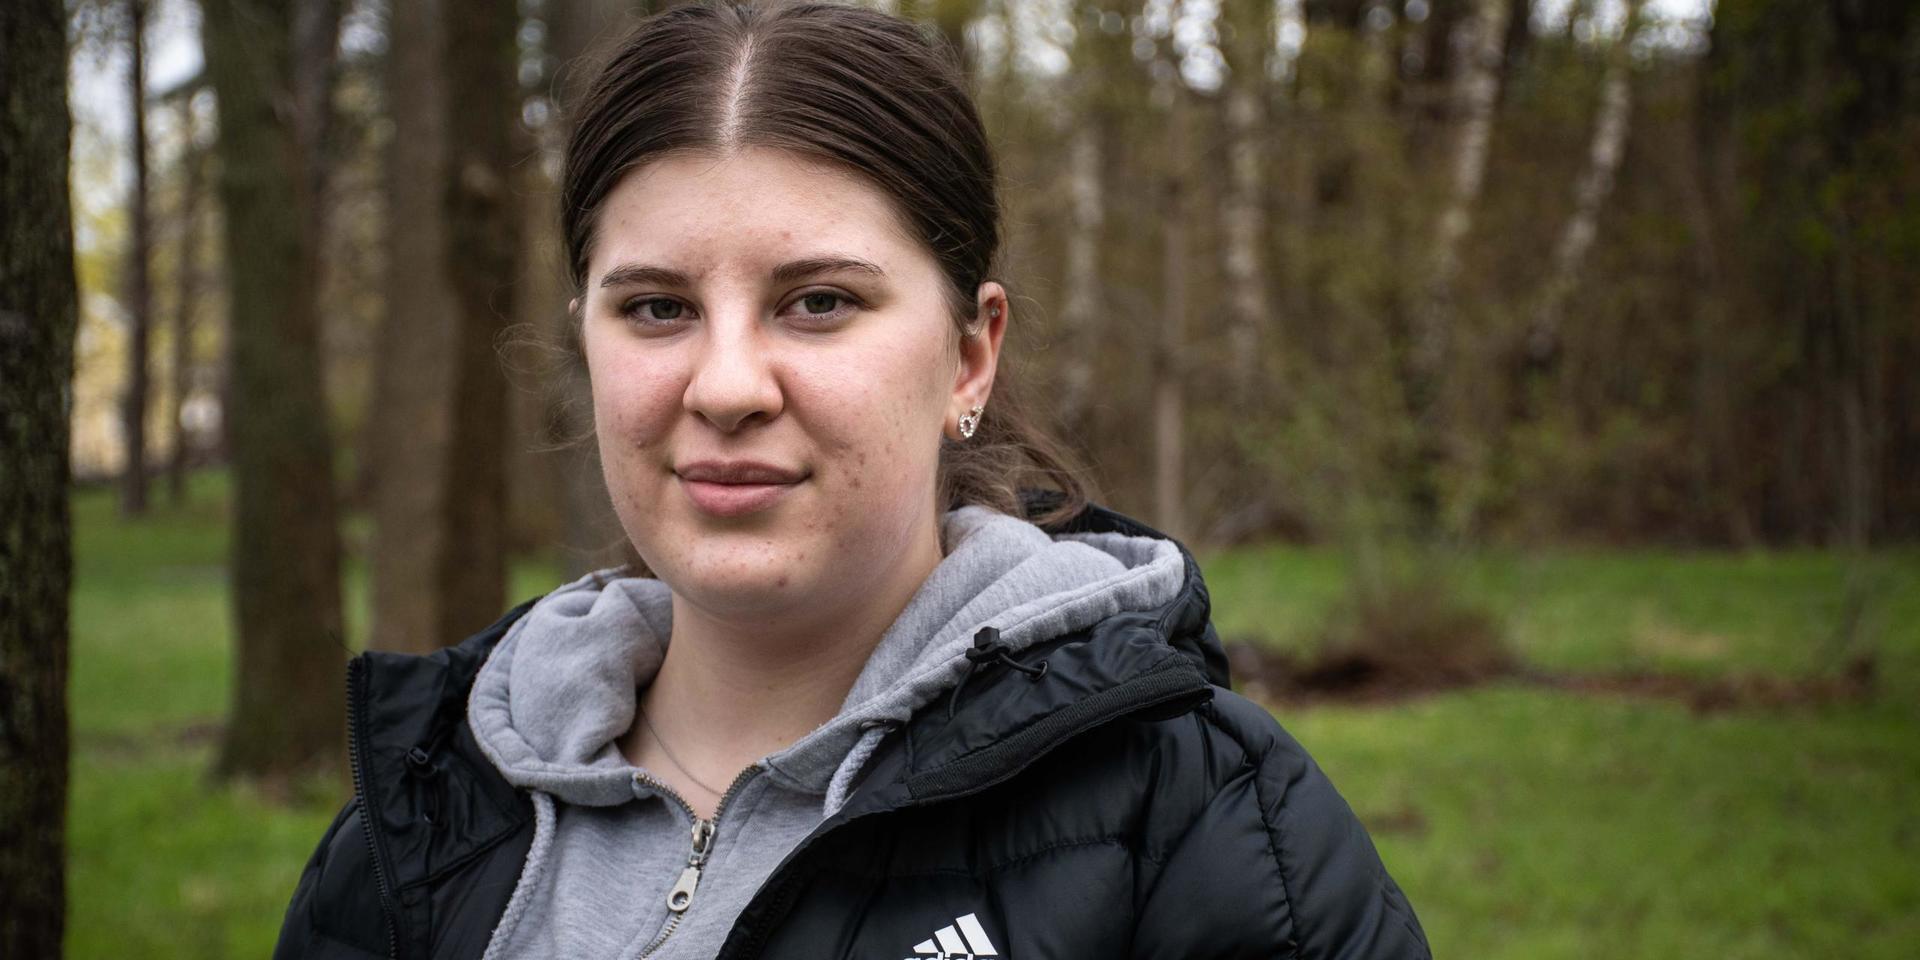 Amanda Gjinaj jobbade sin sista dag på Mölndals sjukhus i söndags. Det intensiva trycket med pandemin gjorde att hon fick välja mellan jobbet eller att gå in i väggen. 